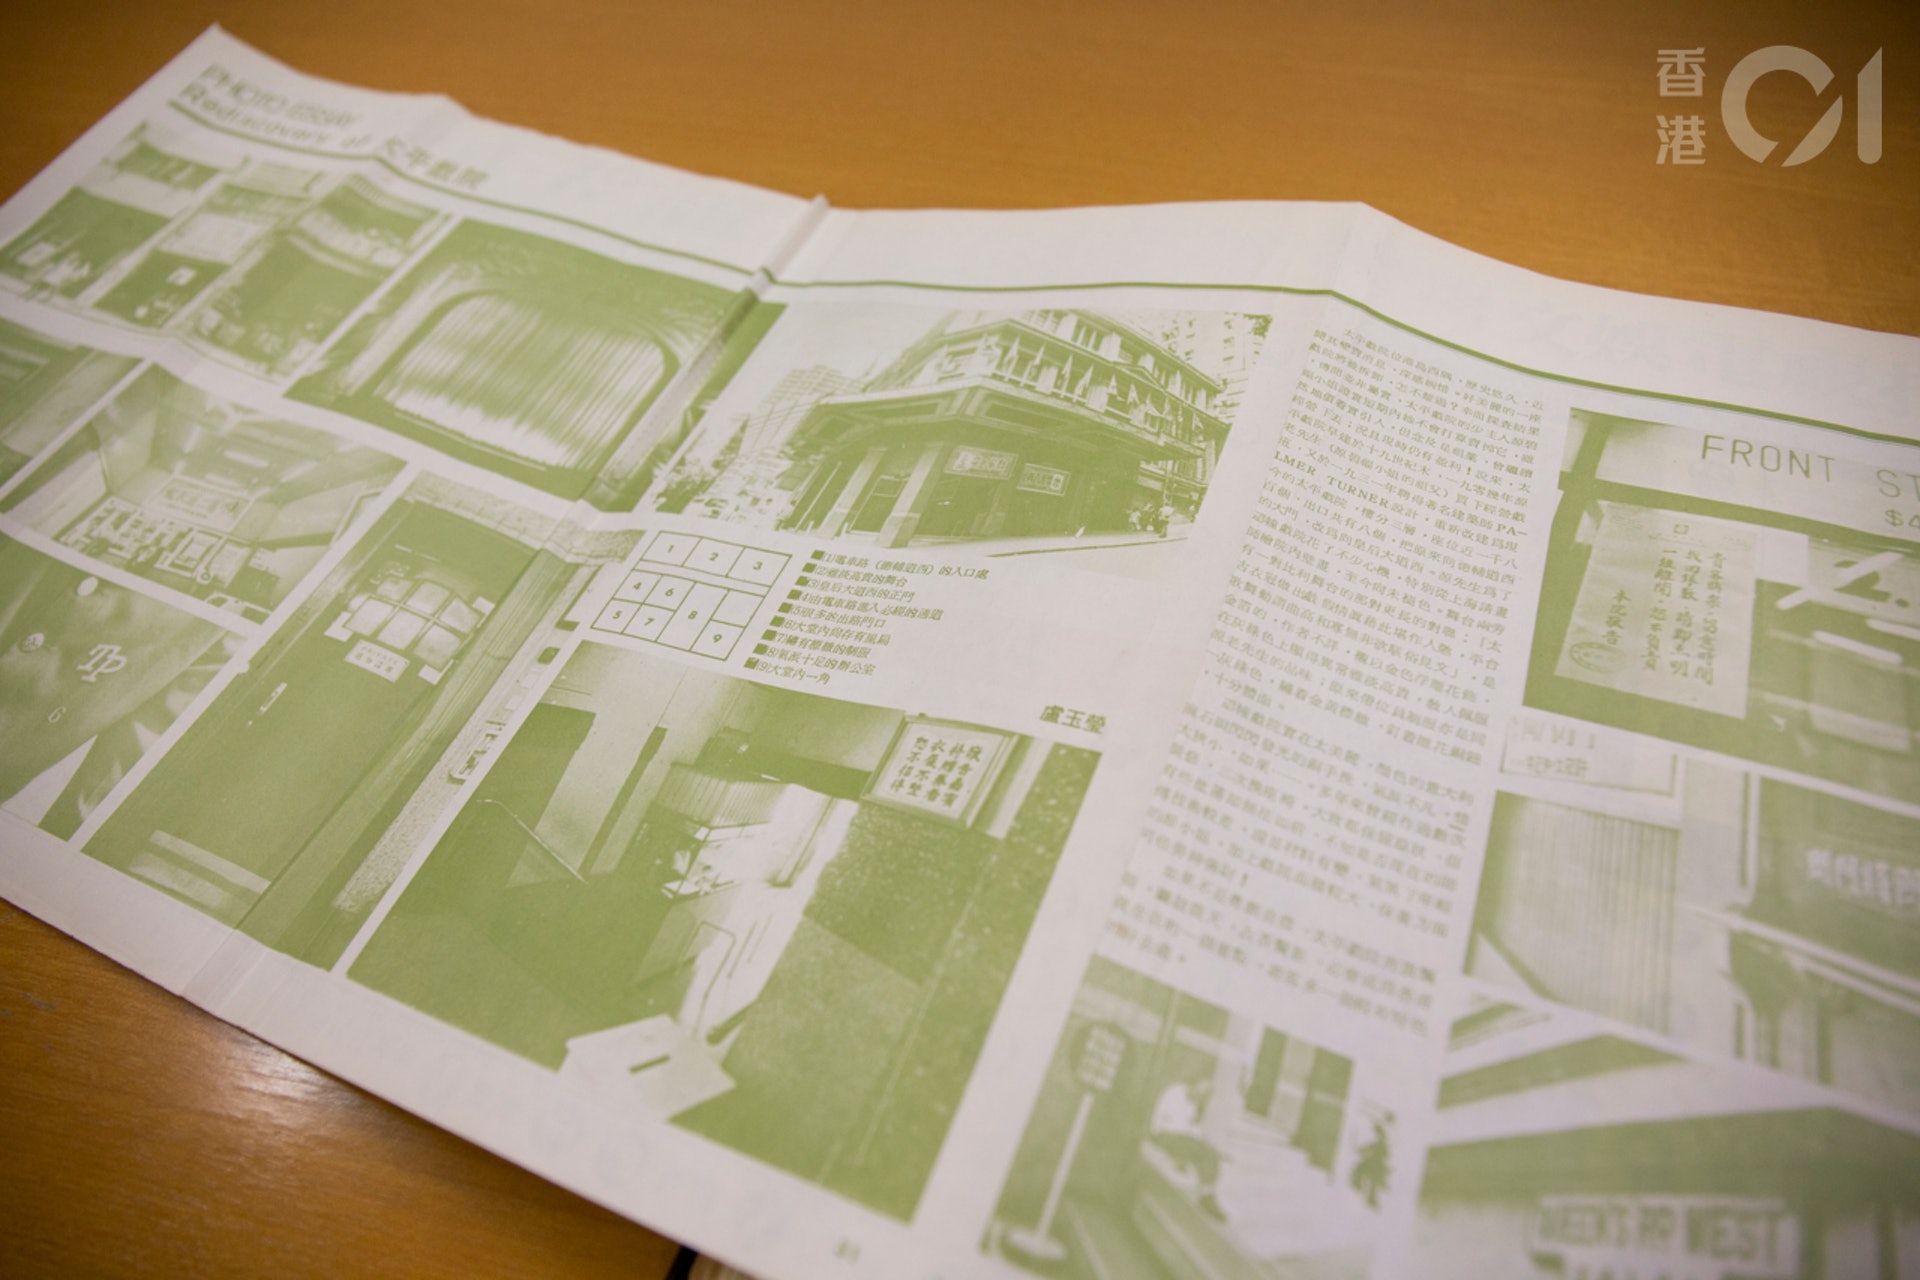 連載「曝光人物」之前，盧玉瑩亦有圖輯於《電影雙周刊》發表，此為她拍攝太平戲院建築的圖輯，雜誌特意以拉頁處理圖輯的排版。（周穎瑤攝）